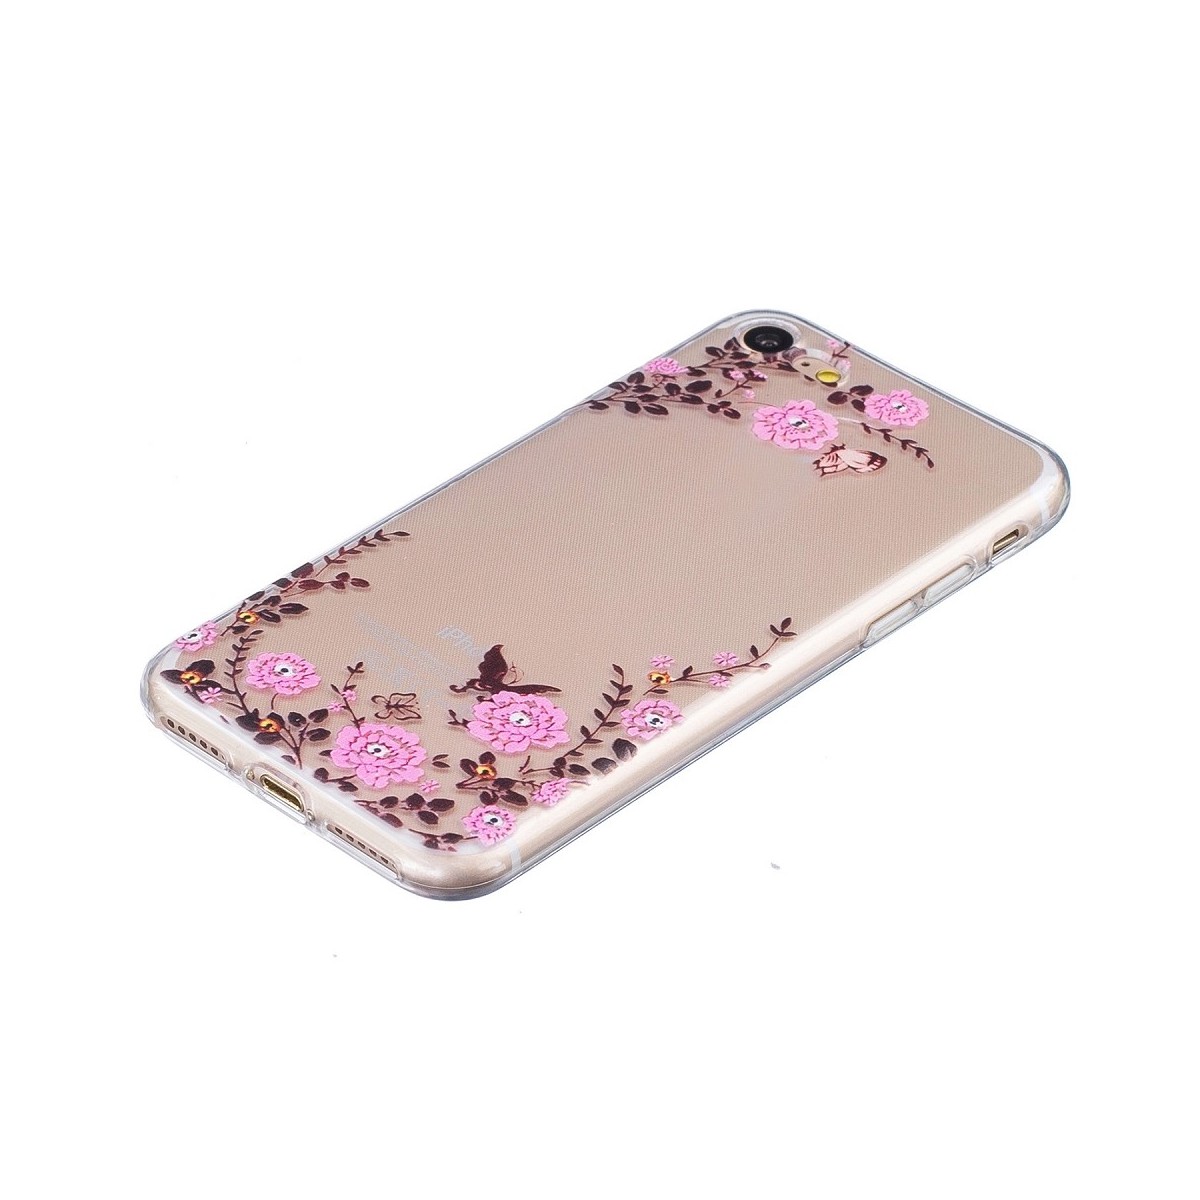 Coque iPhone 7 Transparente souple motif papillons et fleures - Crazy Kase